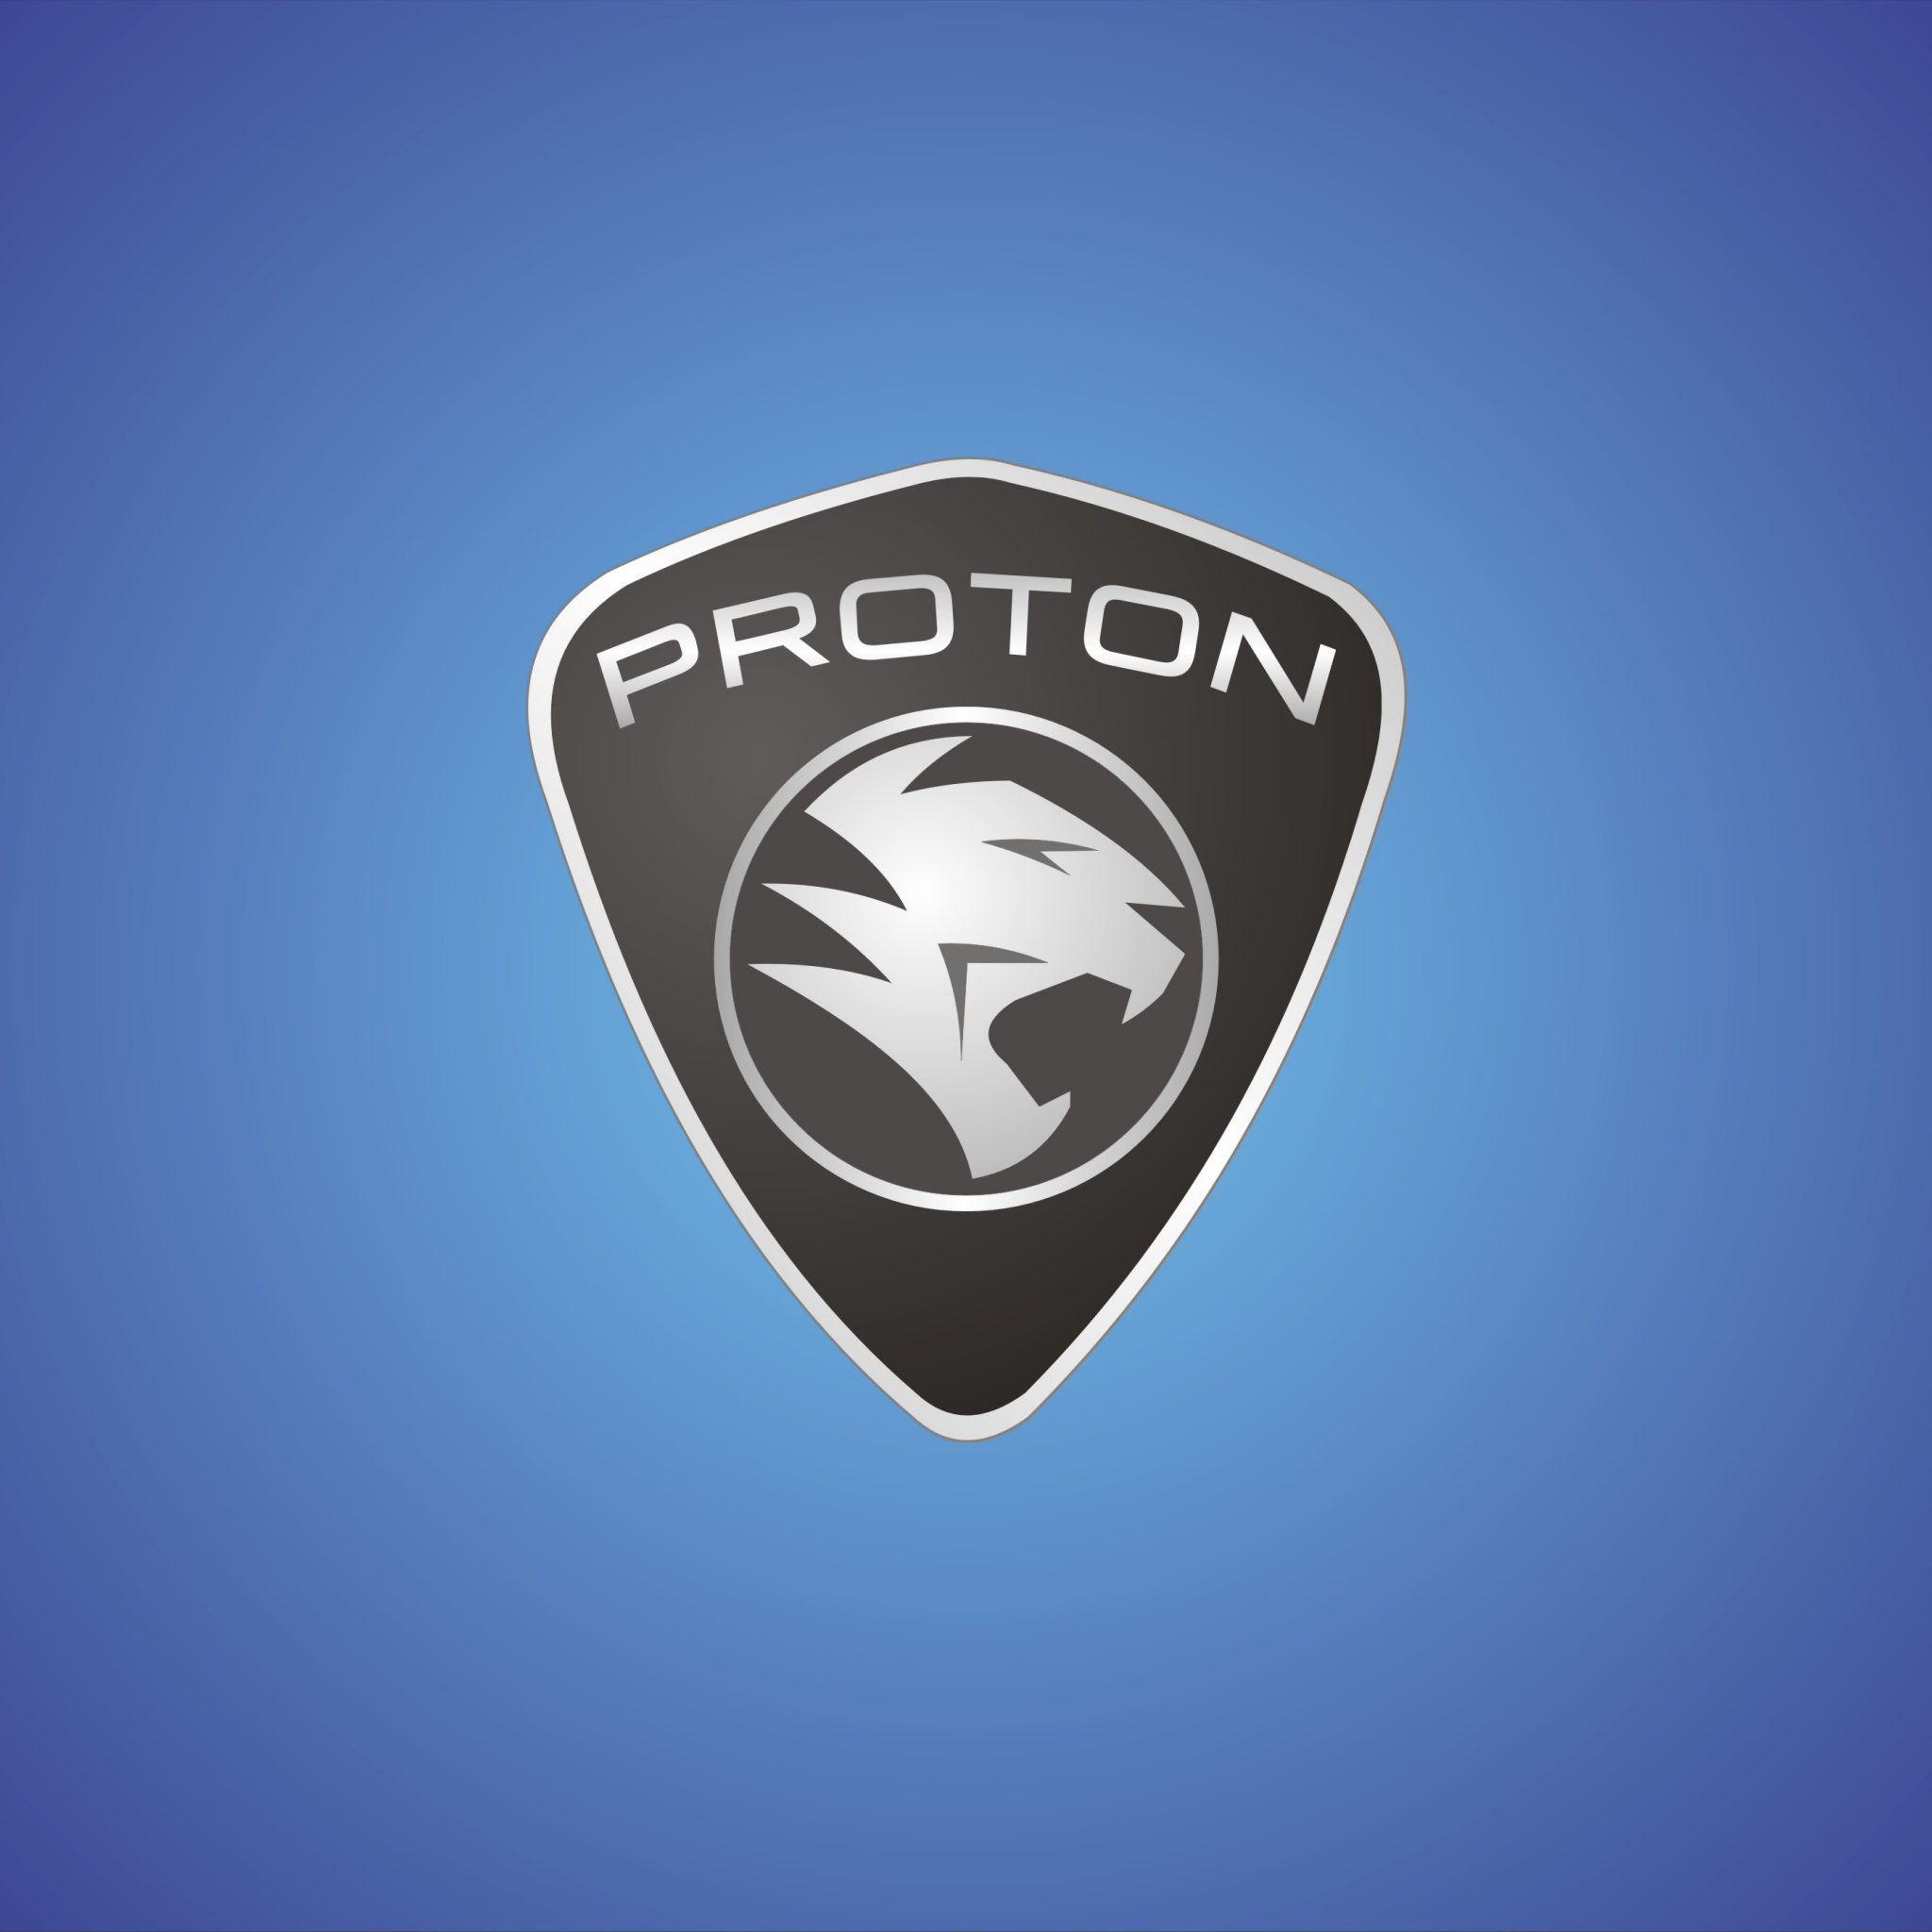 Proton Car Manufacturer Logo Wallpaper Paperpull